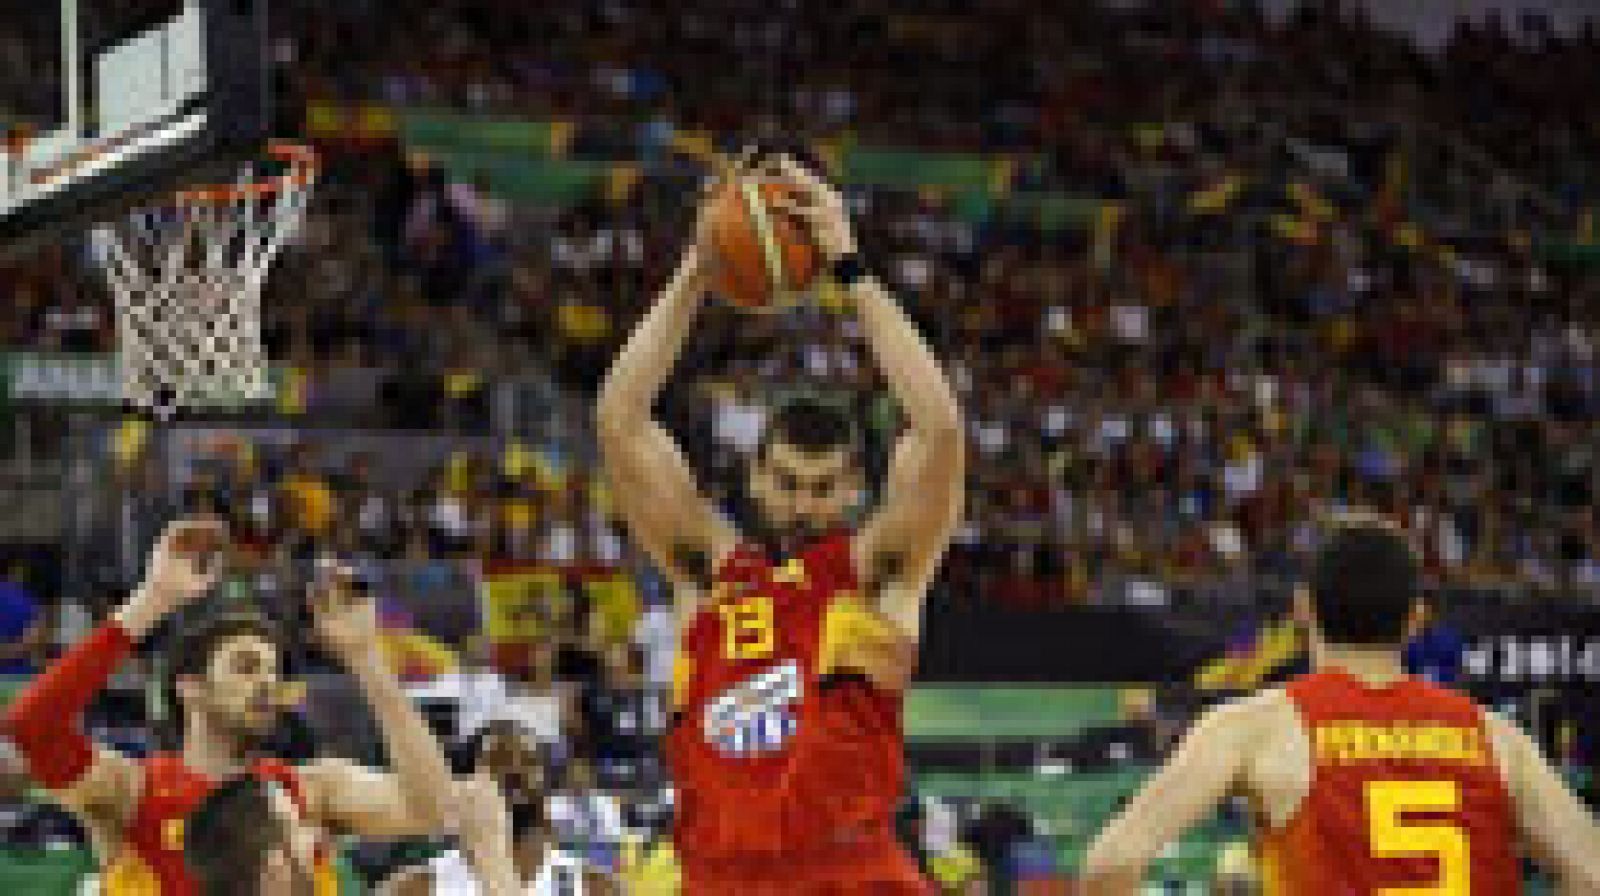 España se medirá a Serbia, Turquía, Italia, Alemania e Islandia en el grupo B de la fase preliminar del Eurobasket de septiembre próximo, y su sede será Berlín, según el sorteo celebrado este lunes en París.